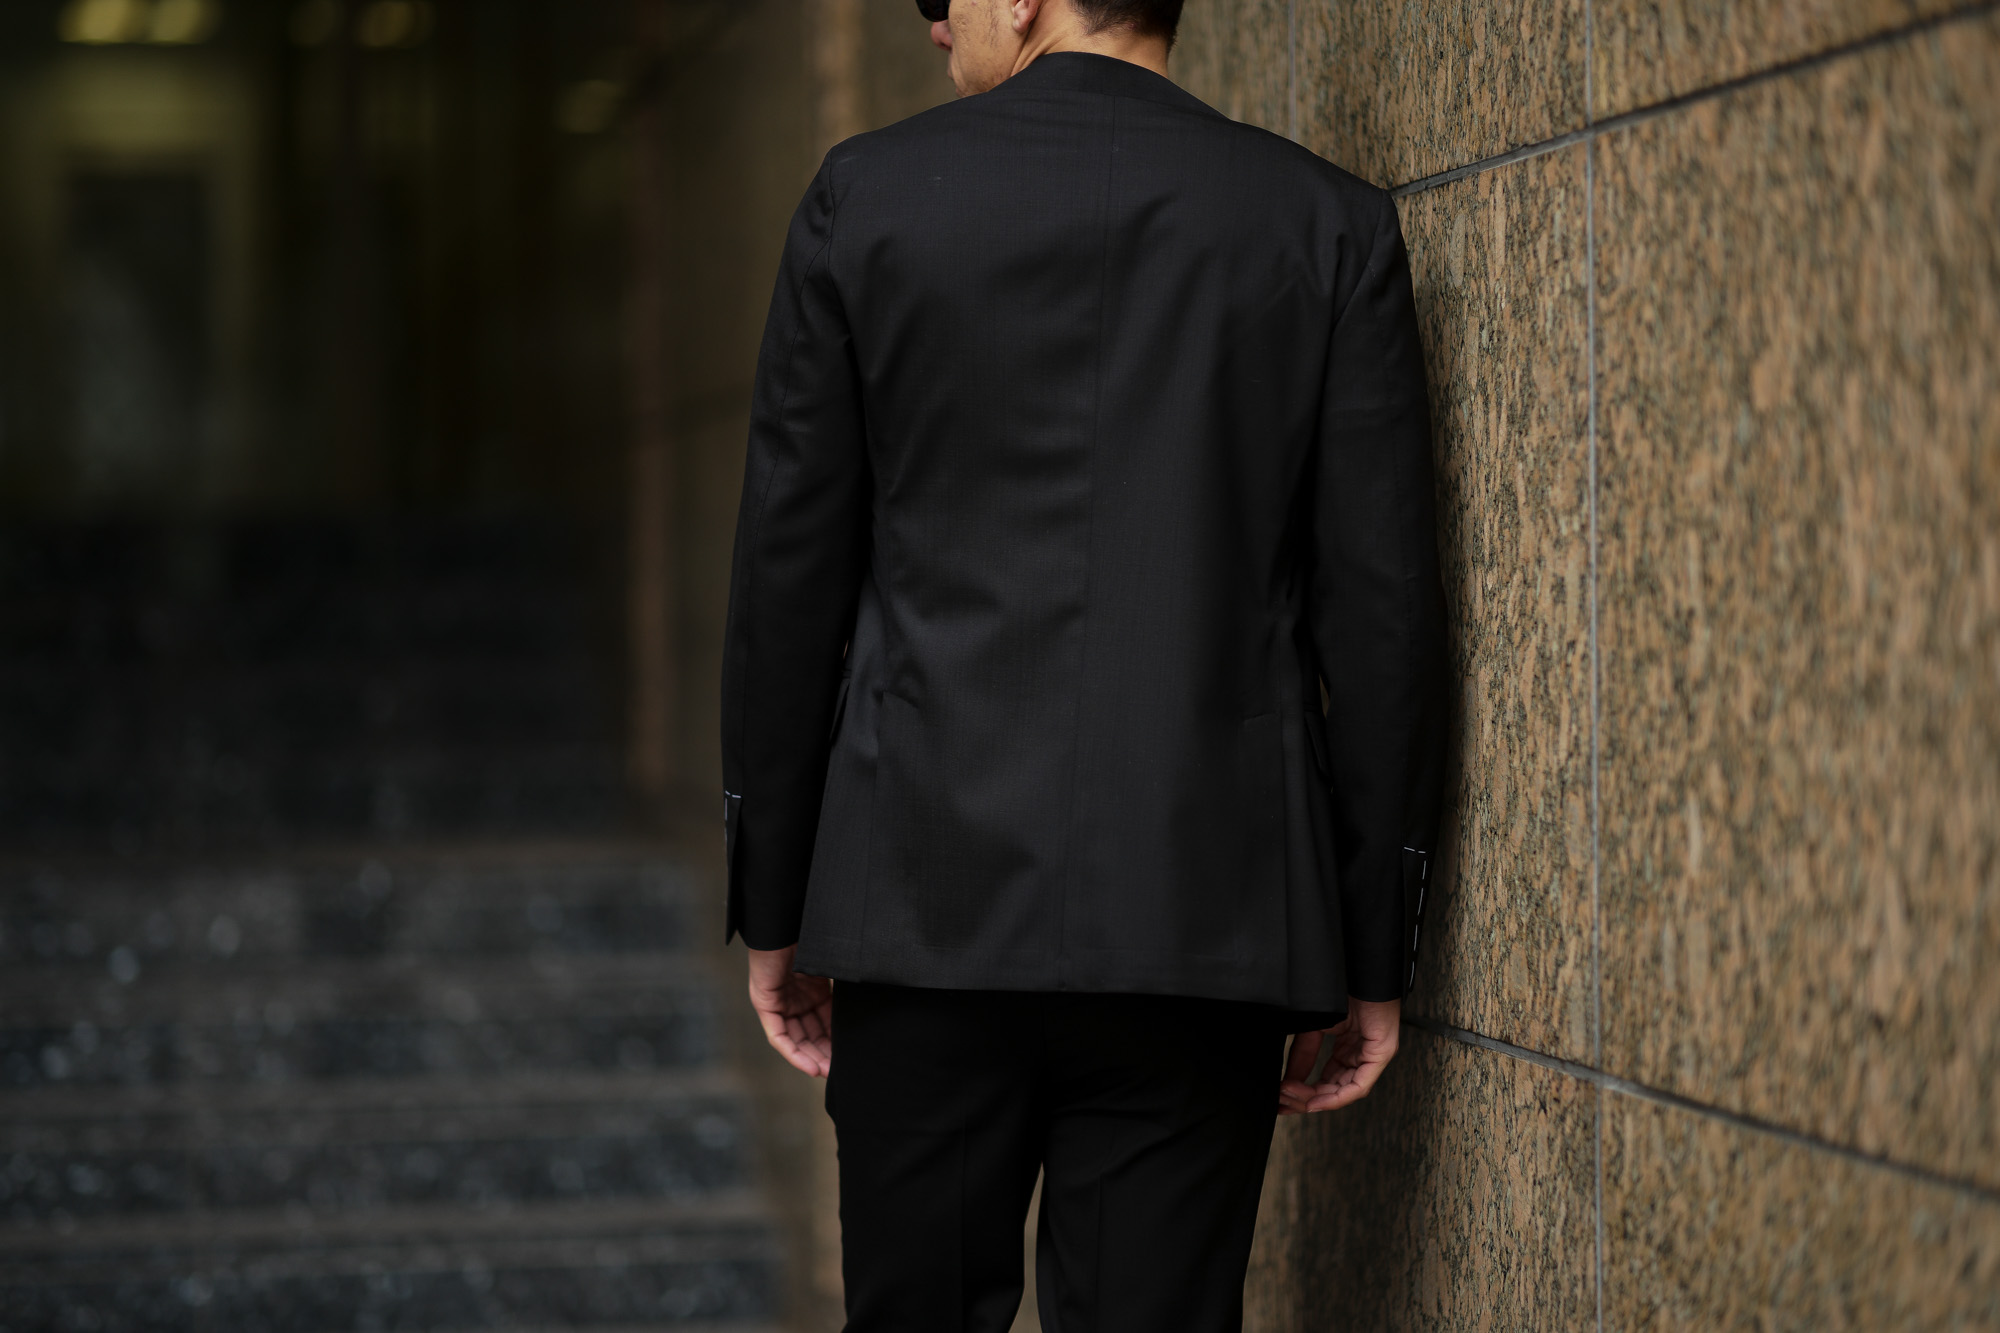 LARDINI (ラルディーニ) EASY WEAR (イージーウエア) Pakkaburu Suit (パッカブル スーツ) トロピカルウール  パッカブル ストレッチ スーツ BLACK (ブラック・306) made in italy (イタリア製) 2019 春夏新作 – 正規通販・名古屋の メンズセレクトショップ Alto e Diritto